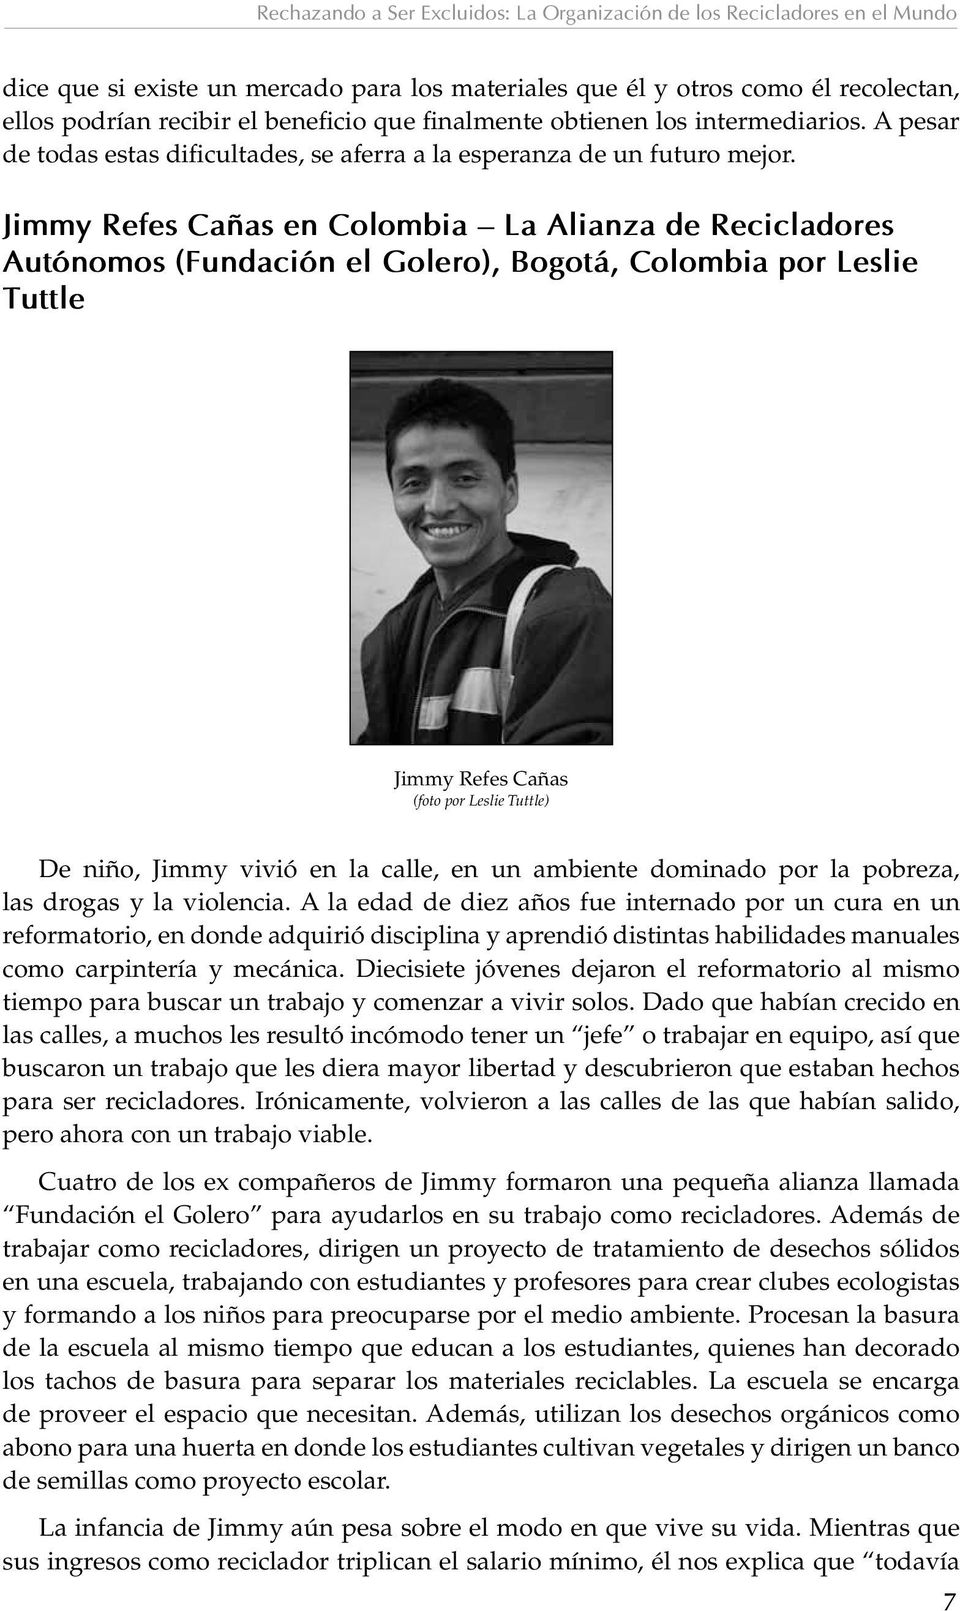 Jimmy Refes Cañas en Colombia La Alianza de Recicladores Autónomos (Fundación el Golero), Bogotá, Colombia por Leslie Tuttle Jimmy Refes Cañas (foto por Leslie Tuttle) De niño, Jimmy vivió en la